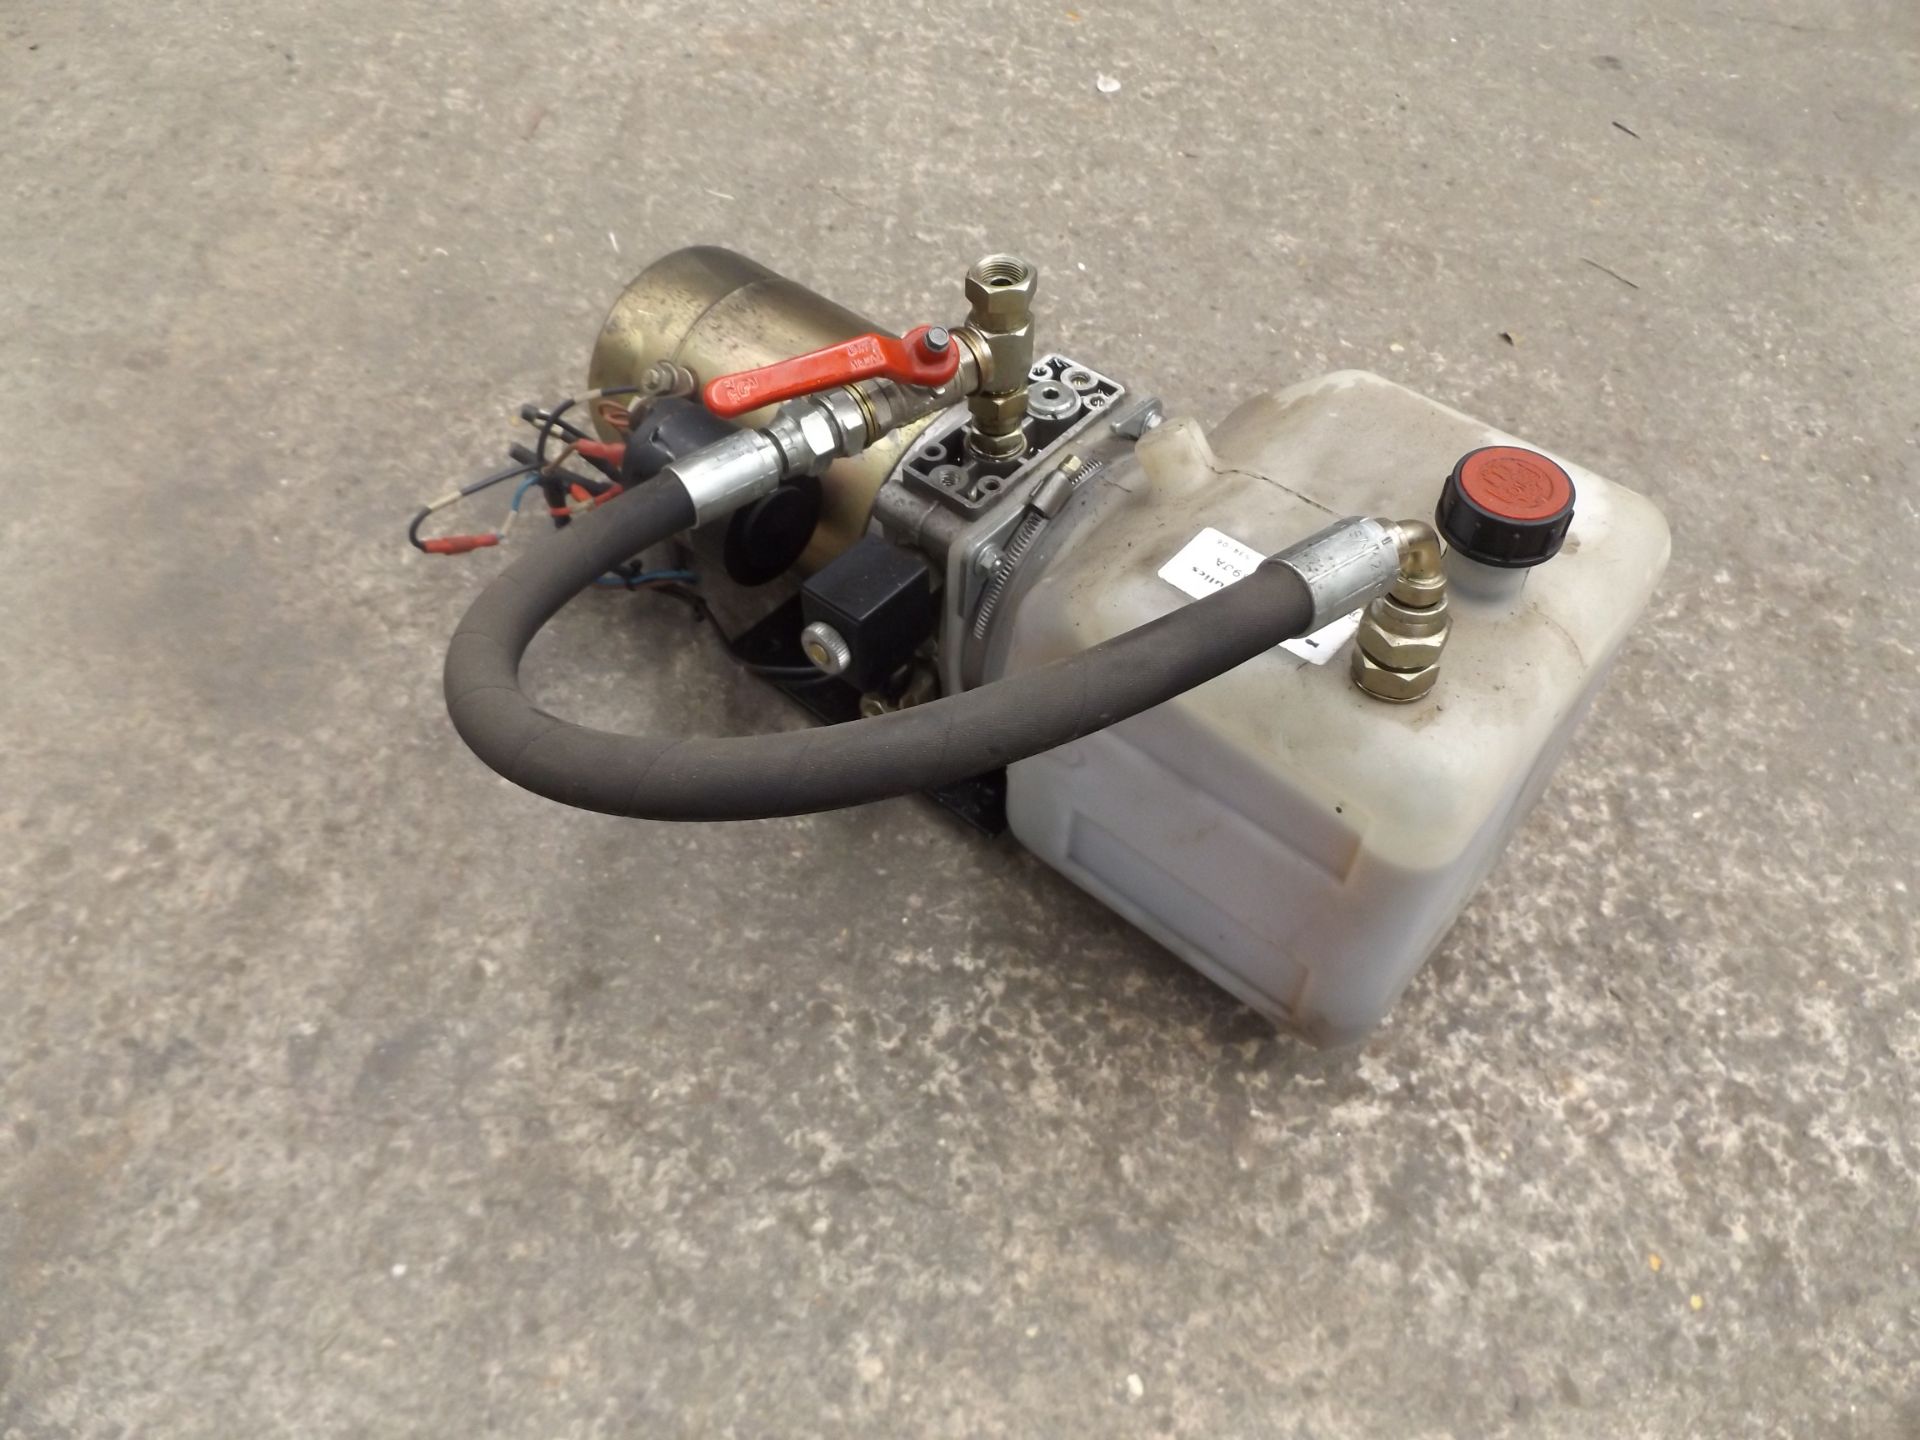 12V 1.8Kw Hydraulic Pump - Image 3 of 6